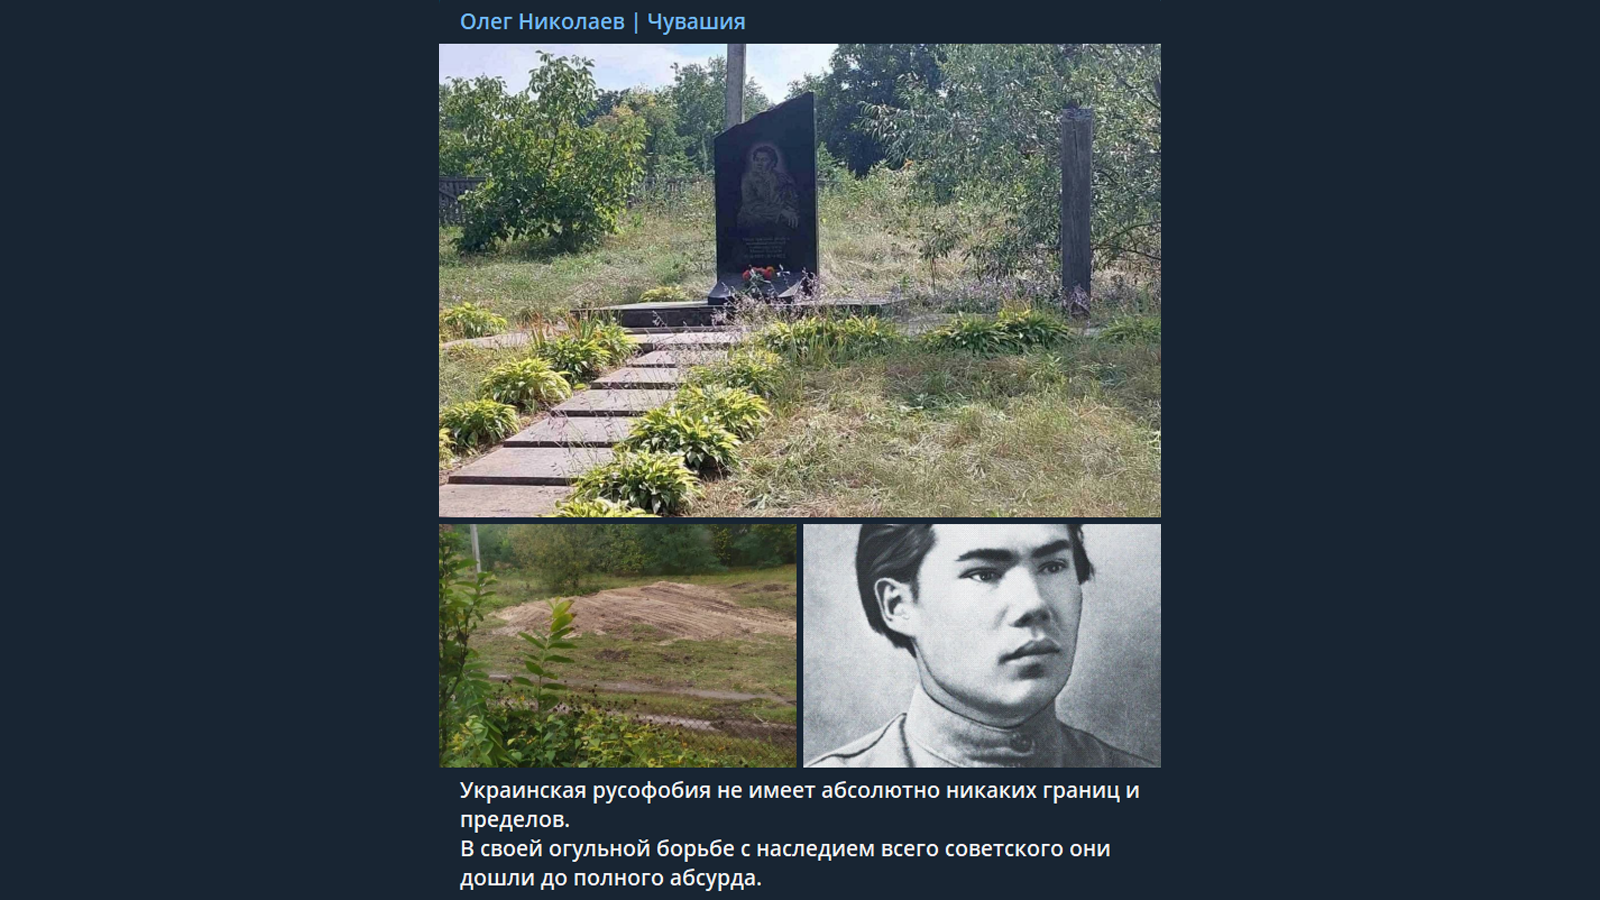 „Az ukrán russzofóbiának egyáltalán nincsenek határai és korlátai”: a Csernyihivi területen lebontották Mihail Szeszpel csuvas kommunista költő emlékművét, ami felkavarta a csuvasföldi megszálló hatóságokat.